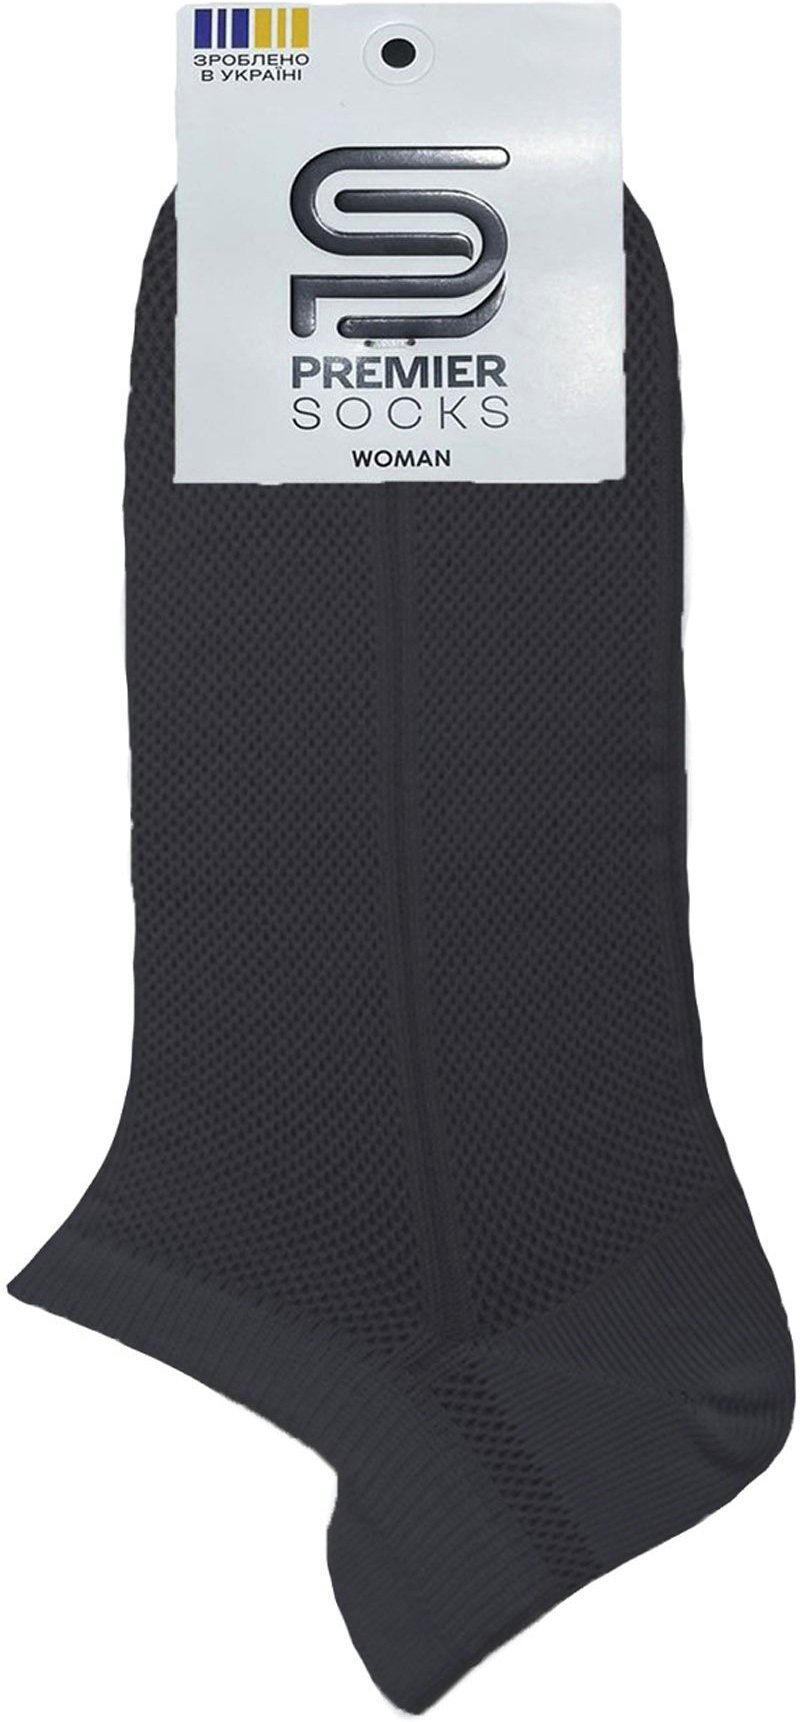 Шкарпетки жіночі Premier Socks 36-40 1 пара чорні (4820163318745)фото2